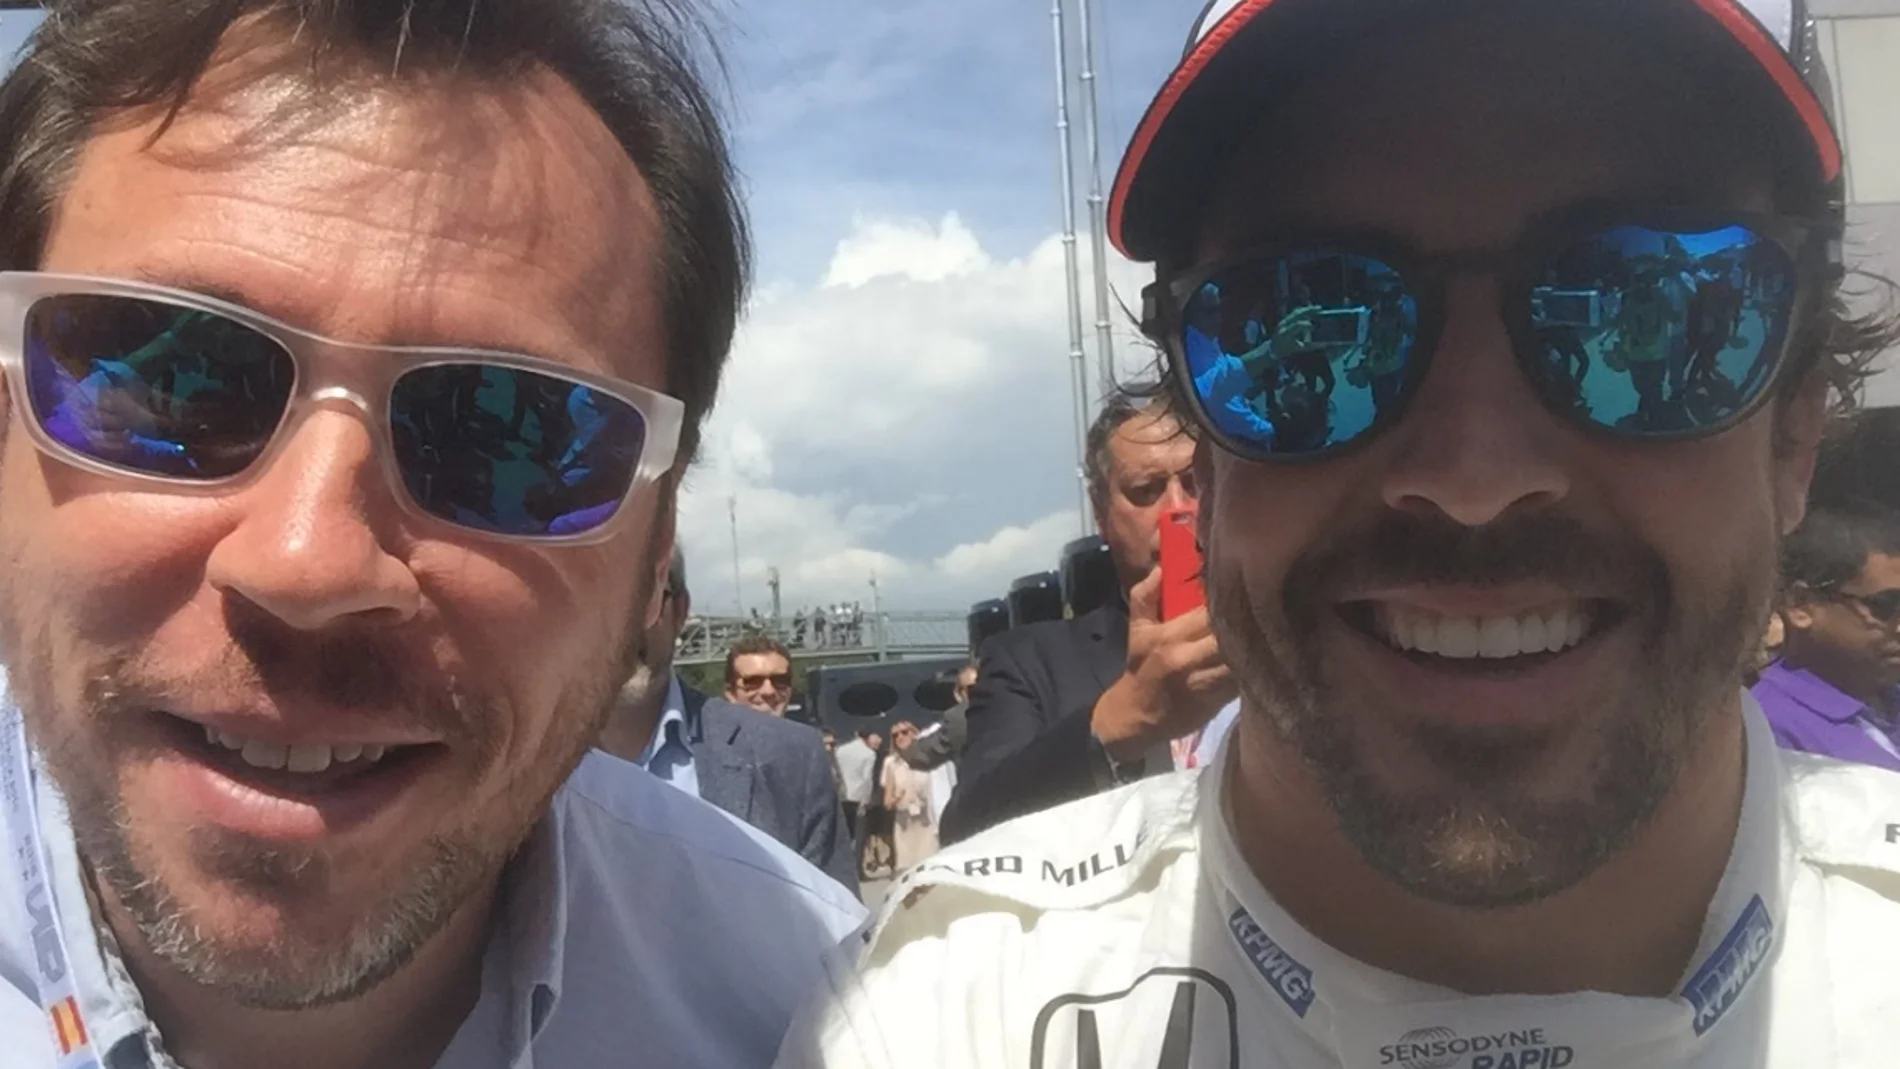 Óscar Puente y Fernando Alonso en una imagen subida a redes sociales por el ministro